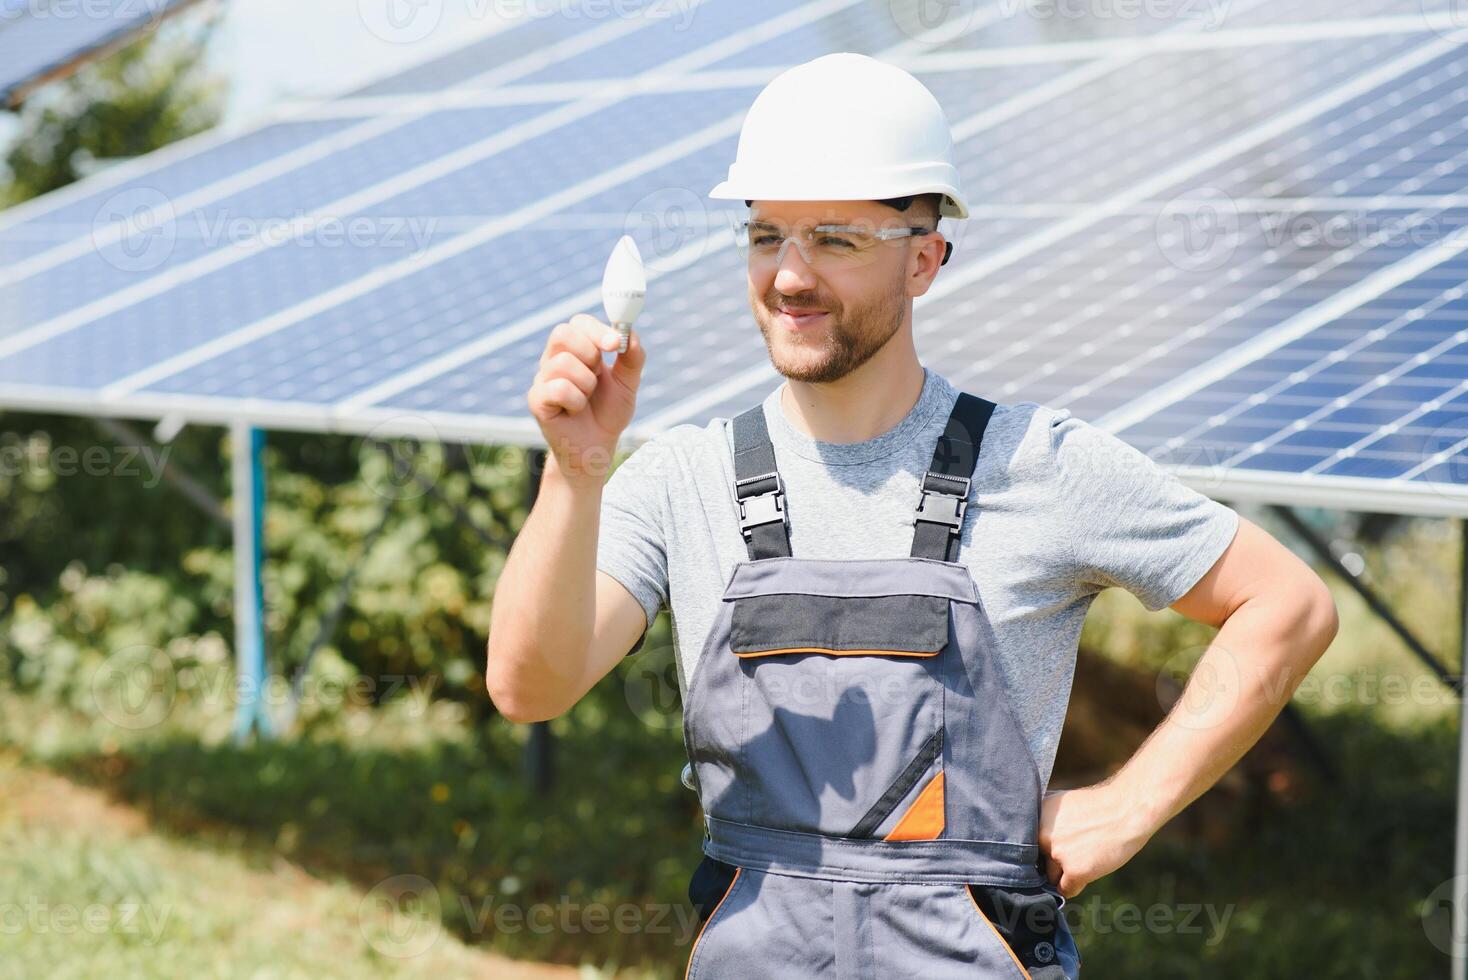 técnico experto en solar fotovoltaica paneles, remoto controlar realiza rutina comportamiento a monitor el sistema utilizando limpiar renovable energía en el mano un ligero bulbo. foto